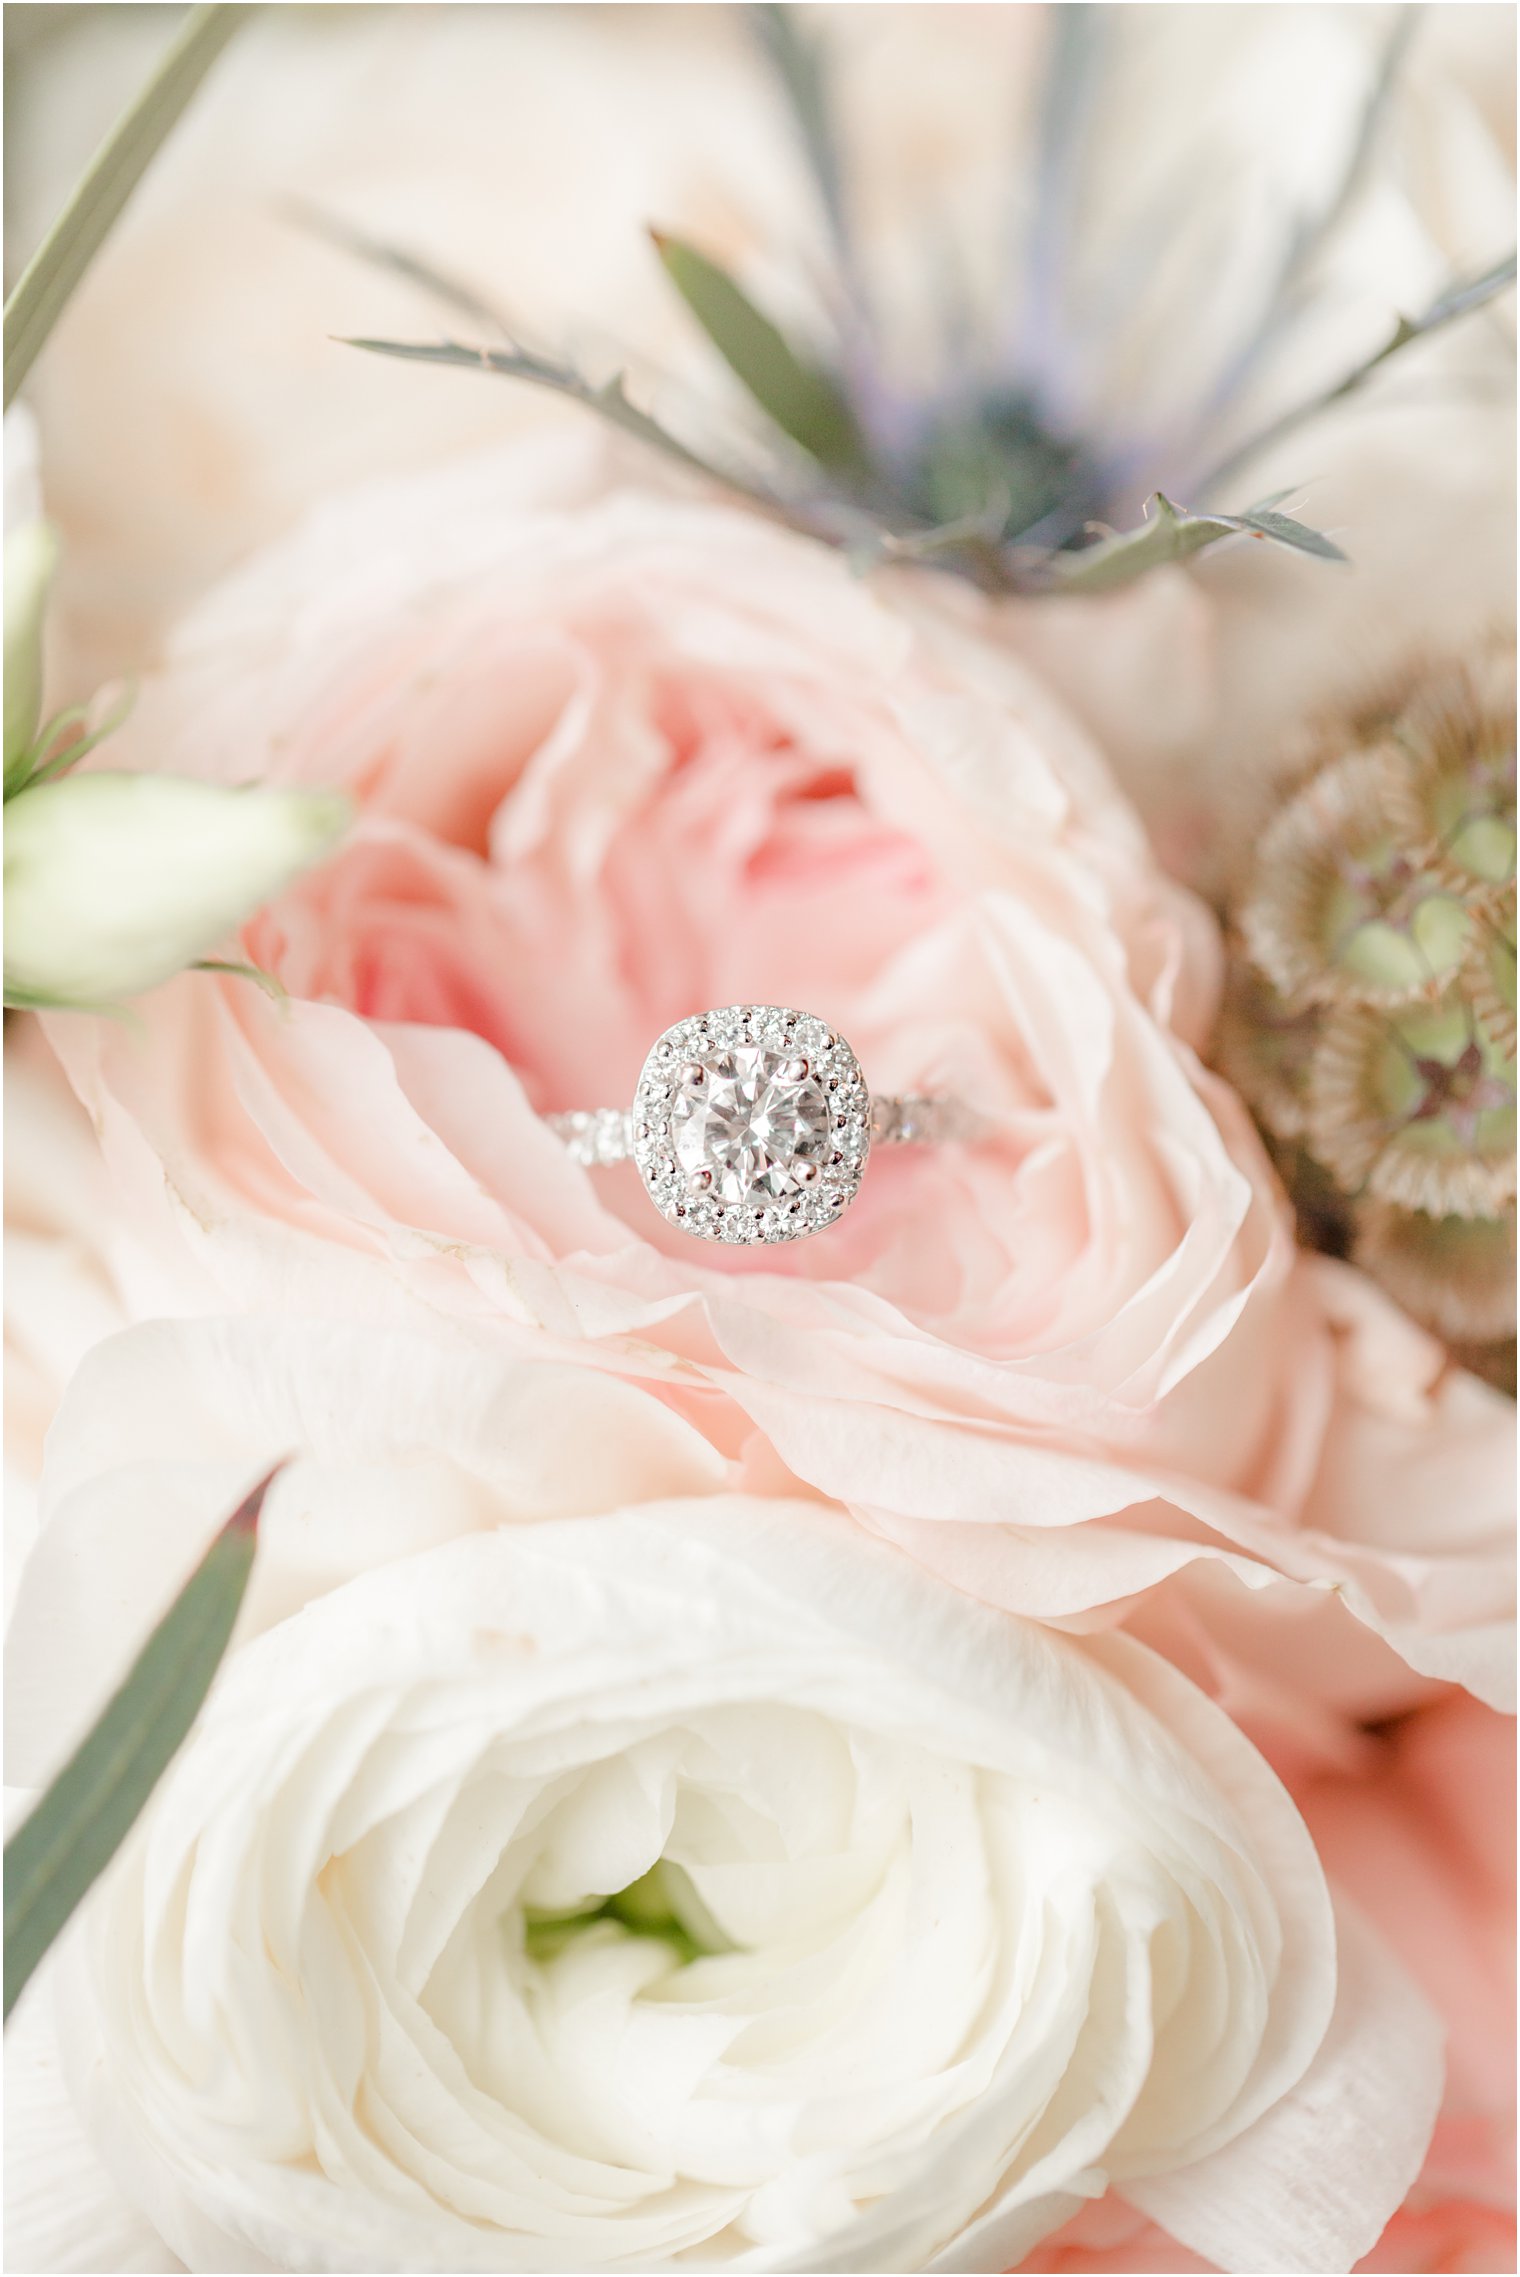 Heirloom wedding ring in a bouquet by Purple Iris Flower Shop